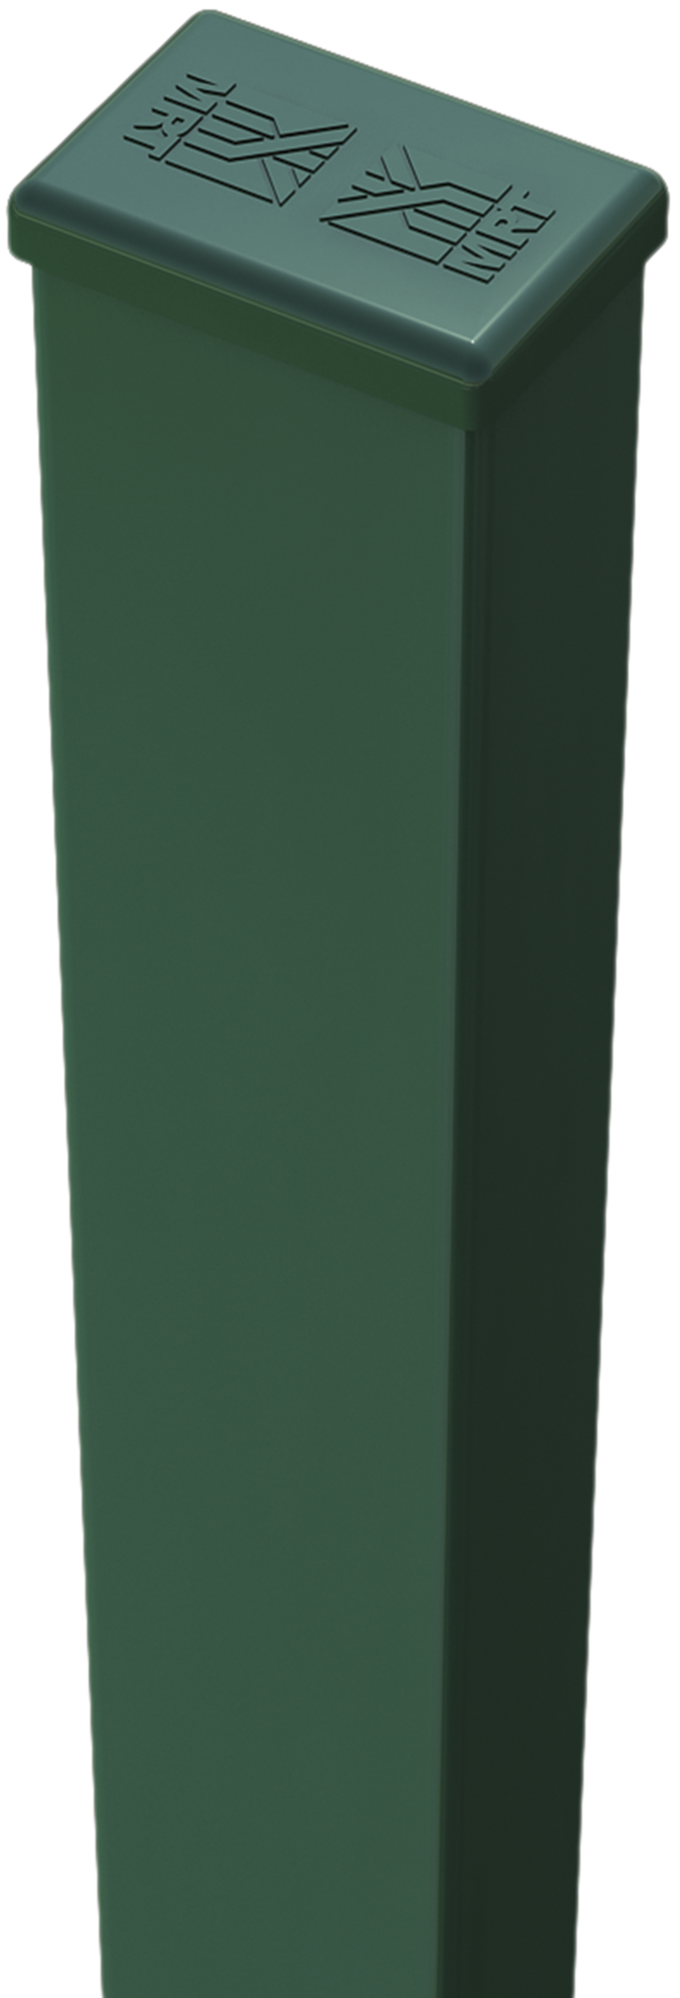 Poste de verde de 40mm y 65 cm